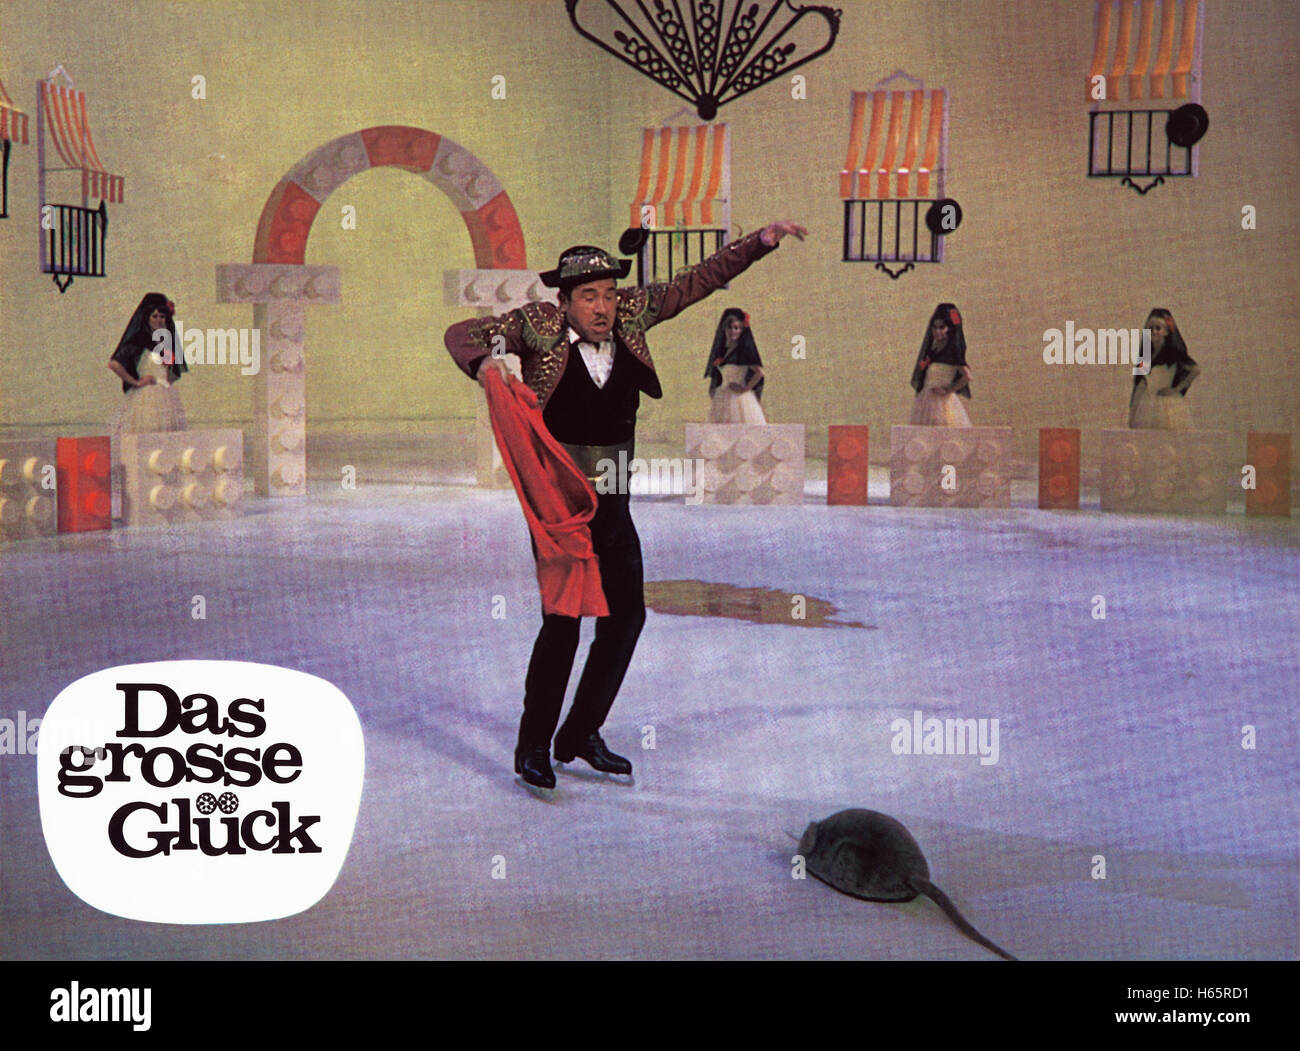 Das grosse Glück, Österreich 1967, Regie: Franz Antel, Darsteller: Franz Muxeneder Stock Photo